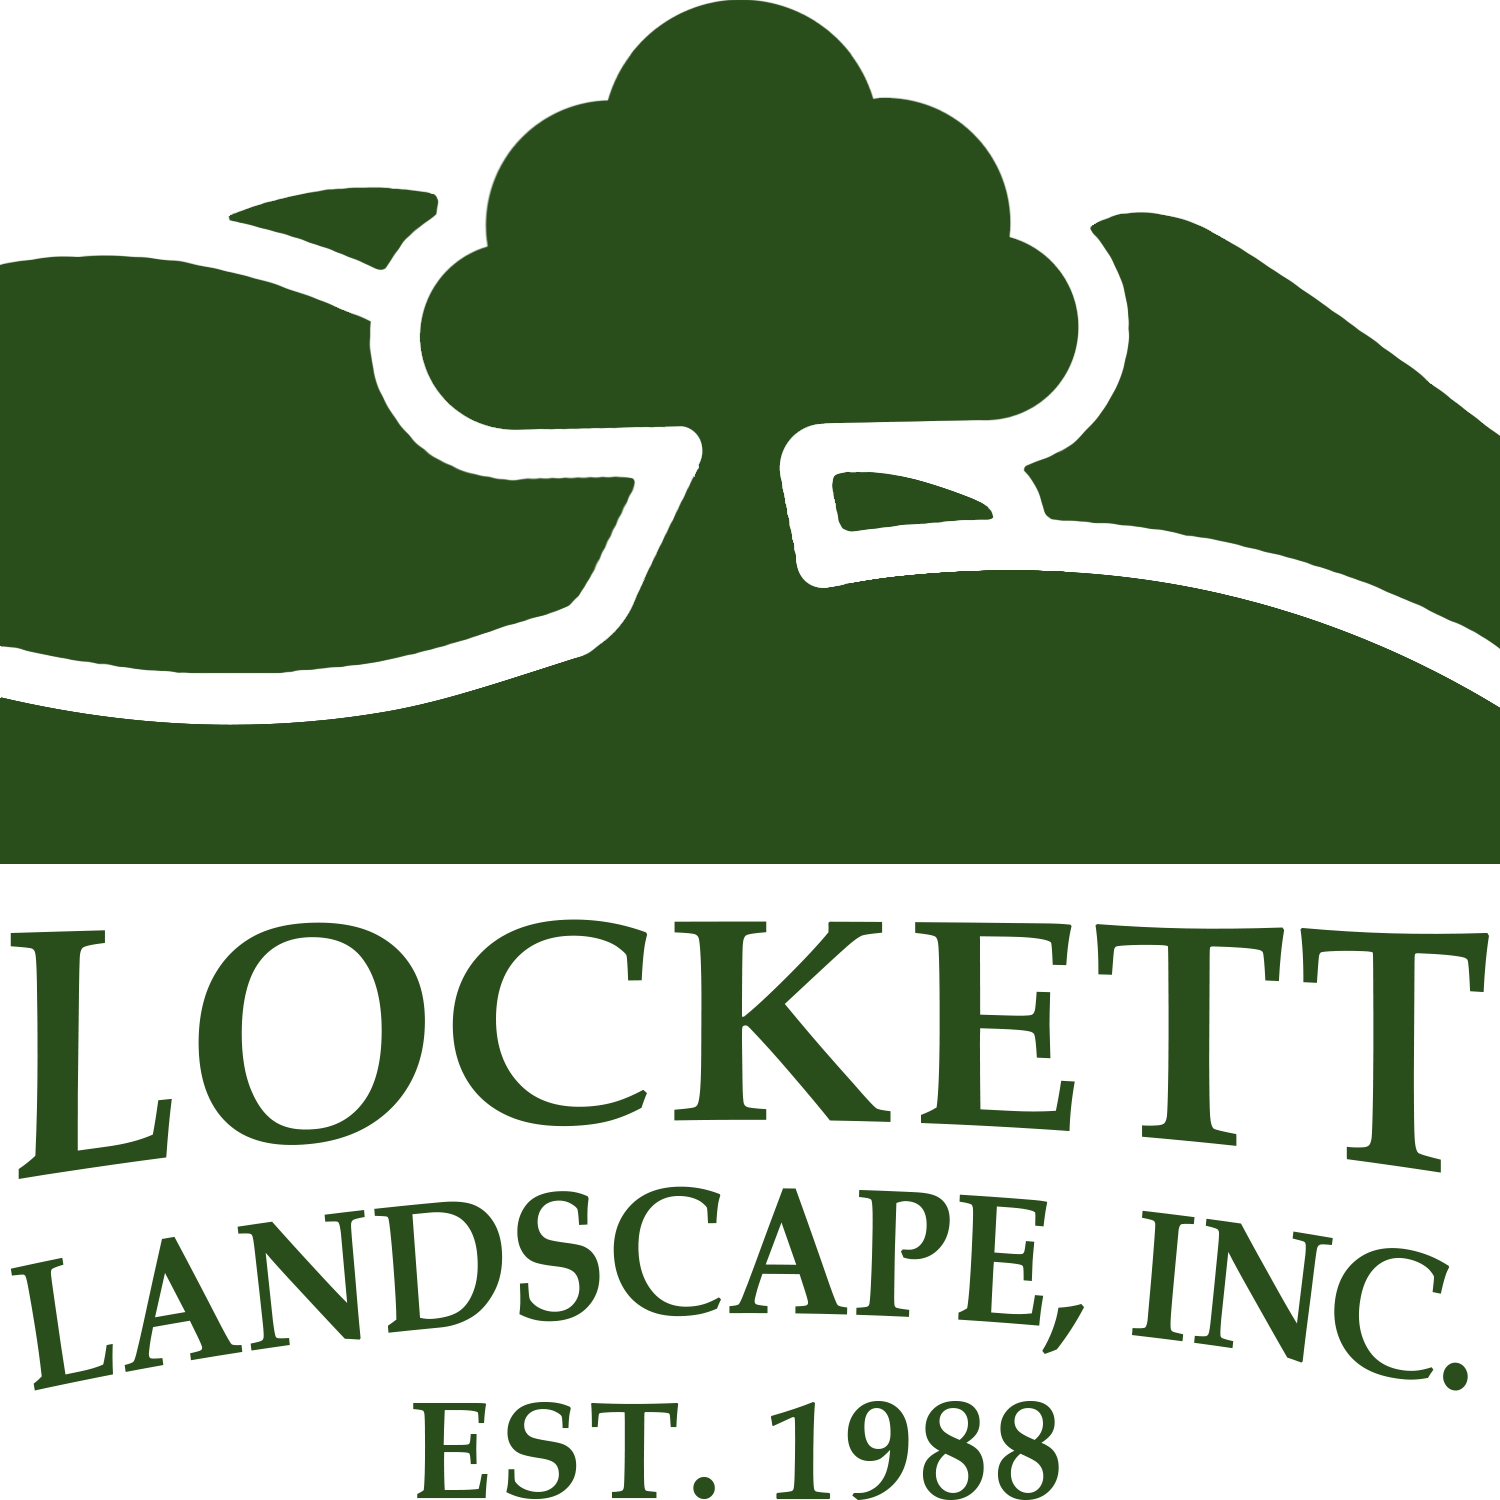 Lockett Landscape, Inc.